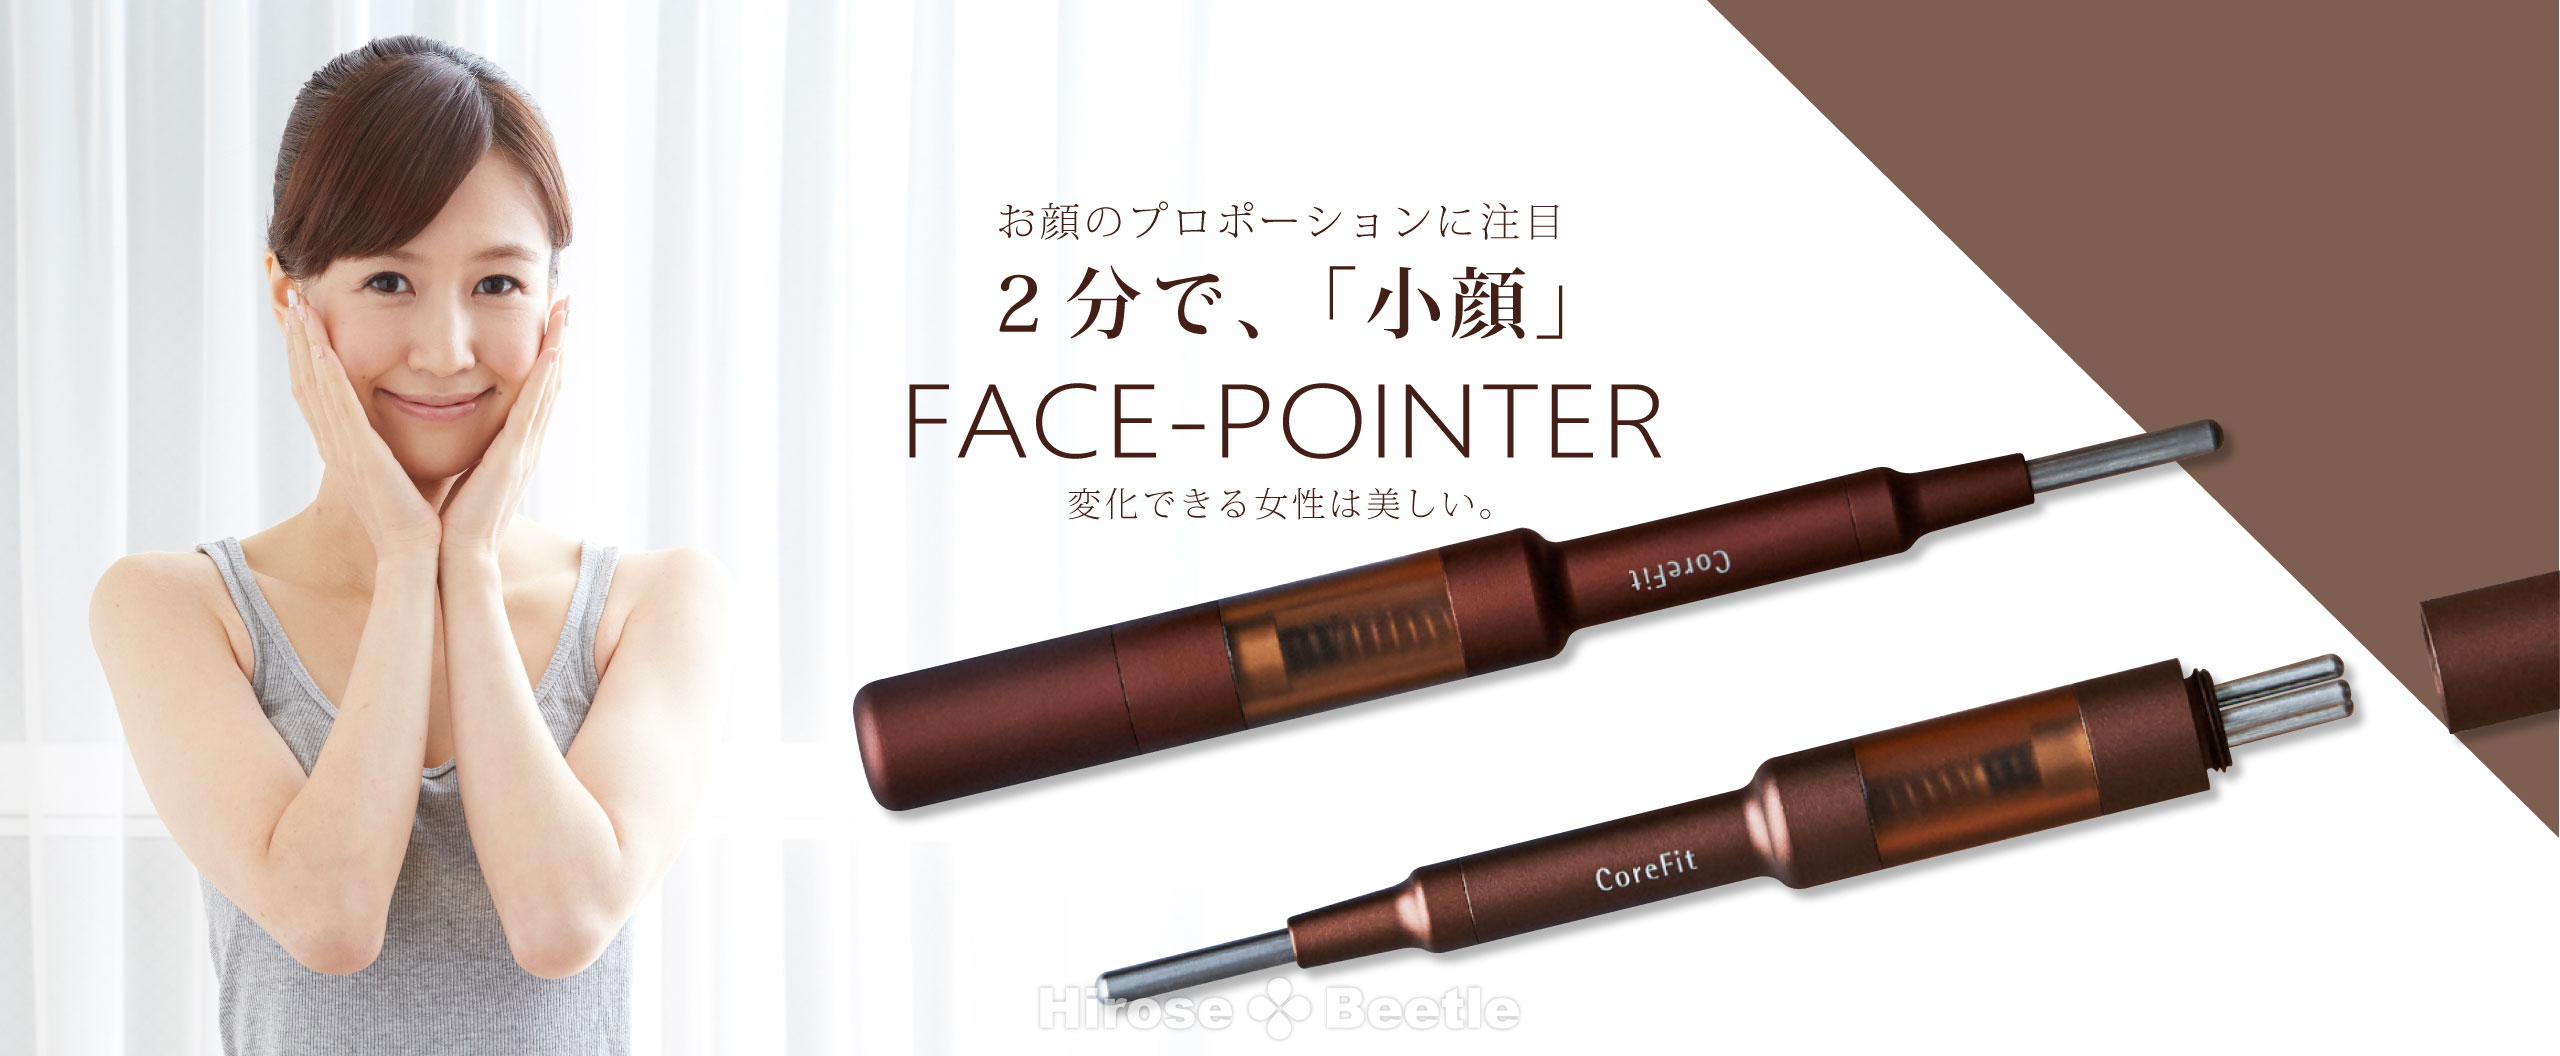 Face-Pointer フェイスポインター 1日10分 表情筋のコリをほぐす 3D筋膜ストレッチ ペン型美顔器